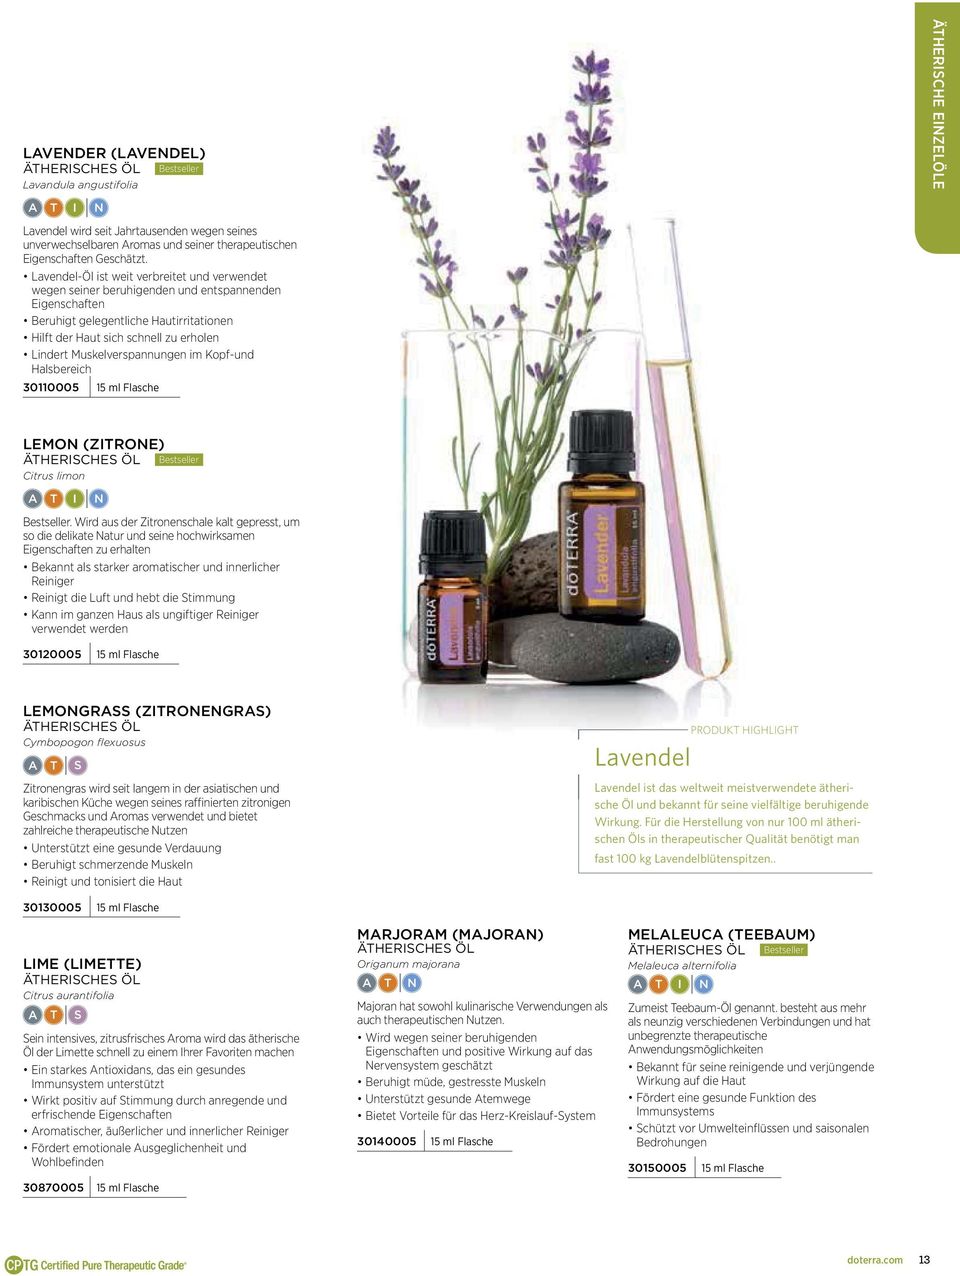 Lavendel-Öl ist weit verbreitet und verwendet wegen seiner beruhigenden und entspannenden Eigenschaften Beruhigt gelegentliche Hautirritationen Hilft der Haut sich schnell zu erholen Lindert